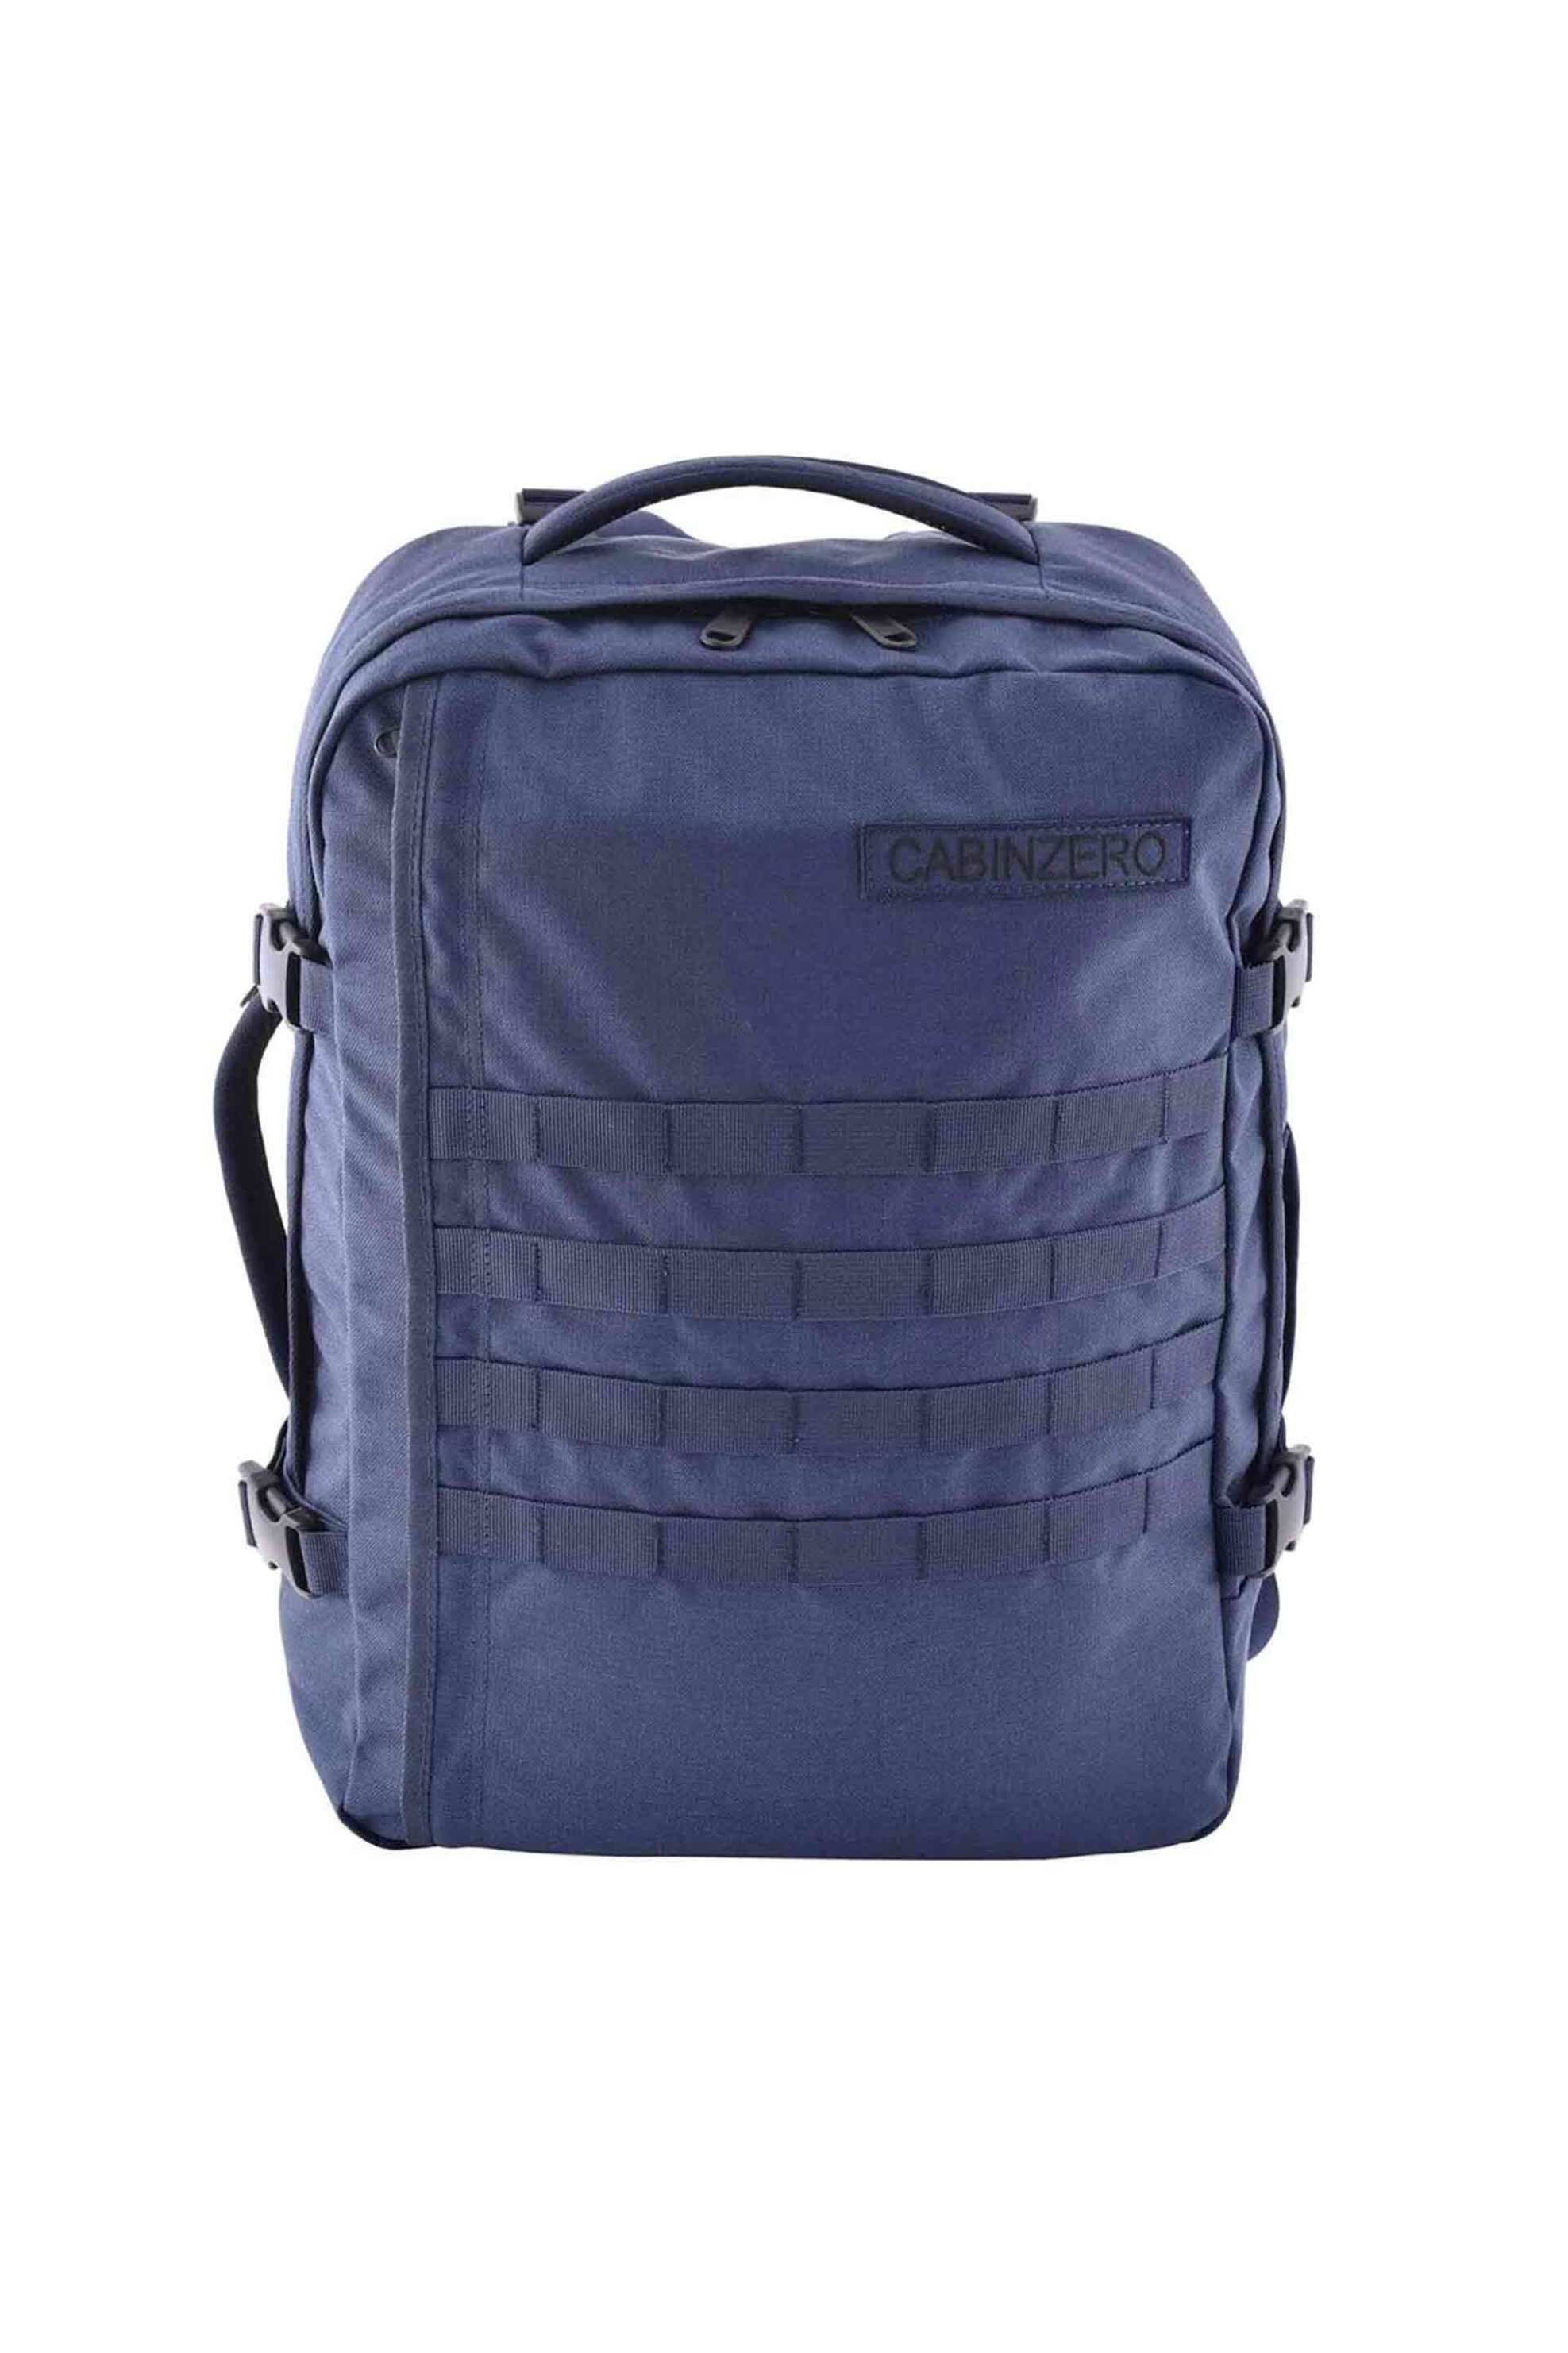 Ανδρική Μόδα > Ανδρικές Τσάντες > Ανδρικά Σακίδια & Backpacks Cabin Zero unisex backpack μονόχρωμο με θήκη laptop και λογότυπο "Military 44L" - CZ181811